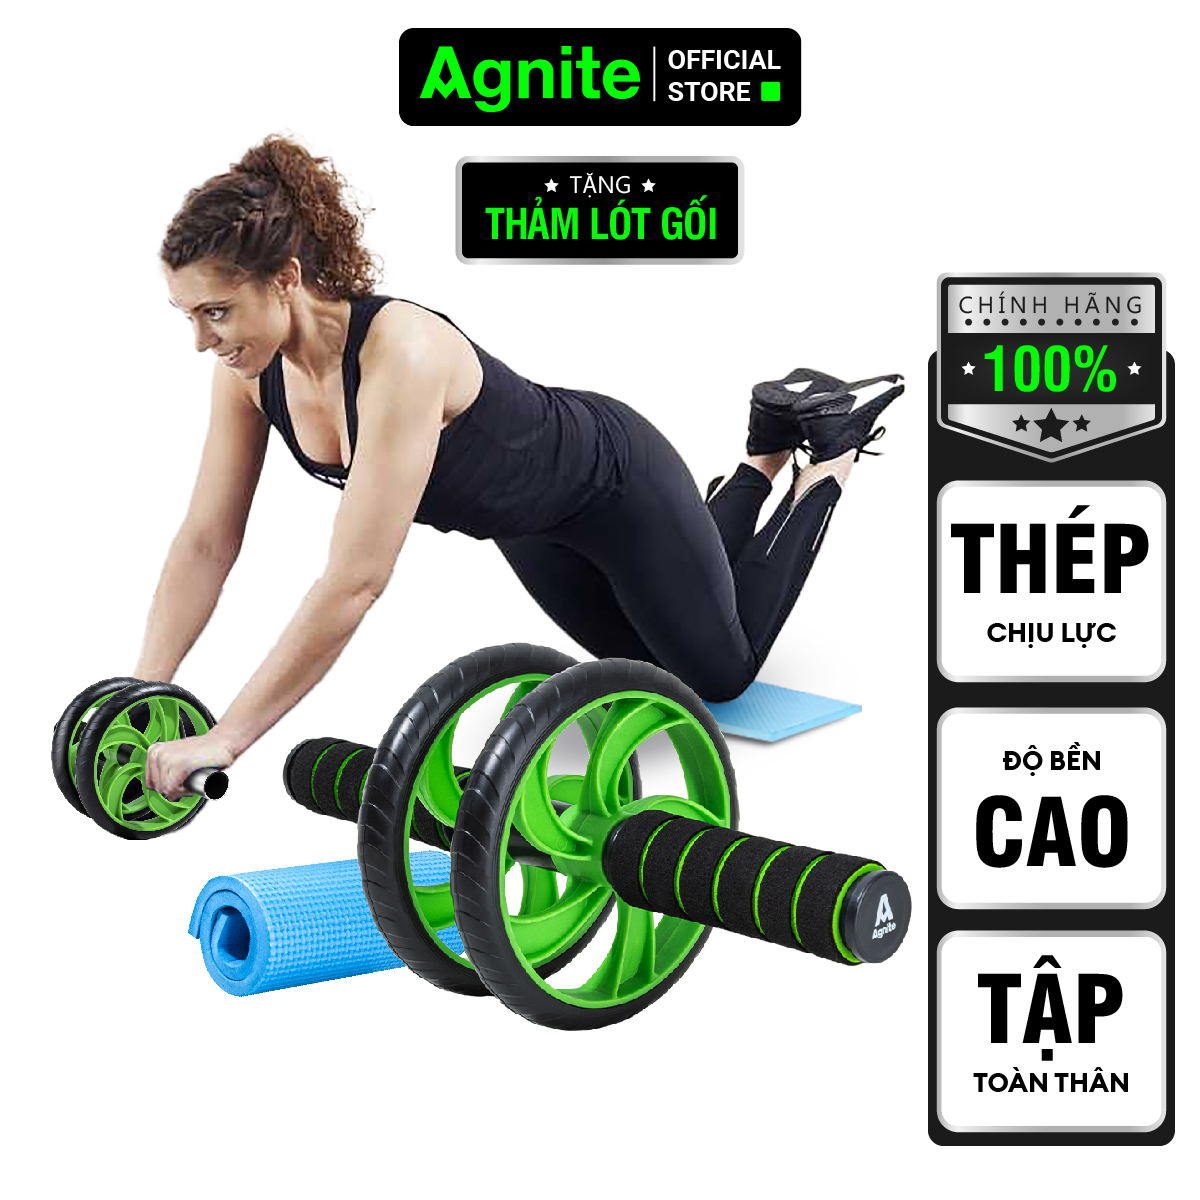 Con lăn tập bụng Agnite chính hãng, dụng cụ hỗ trợ gym tại nhà tiện lợi nhỏ gọn TẶNG kèm thảm lót gối - ER010